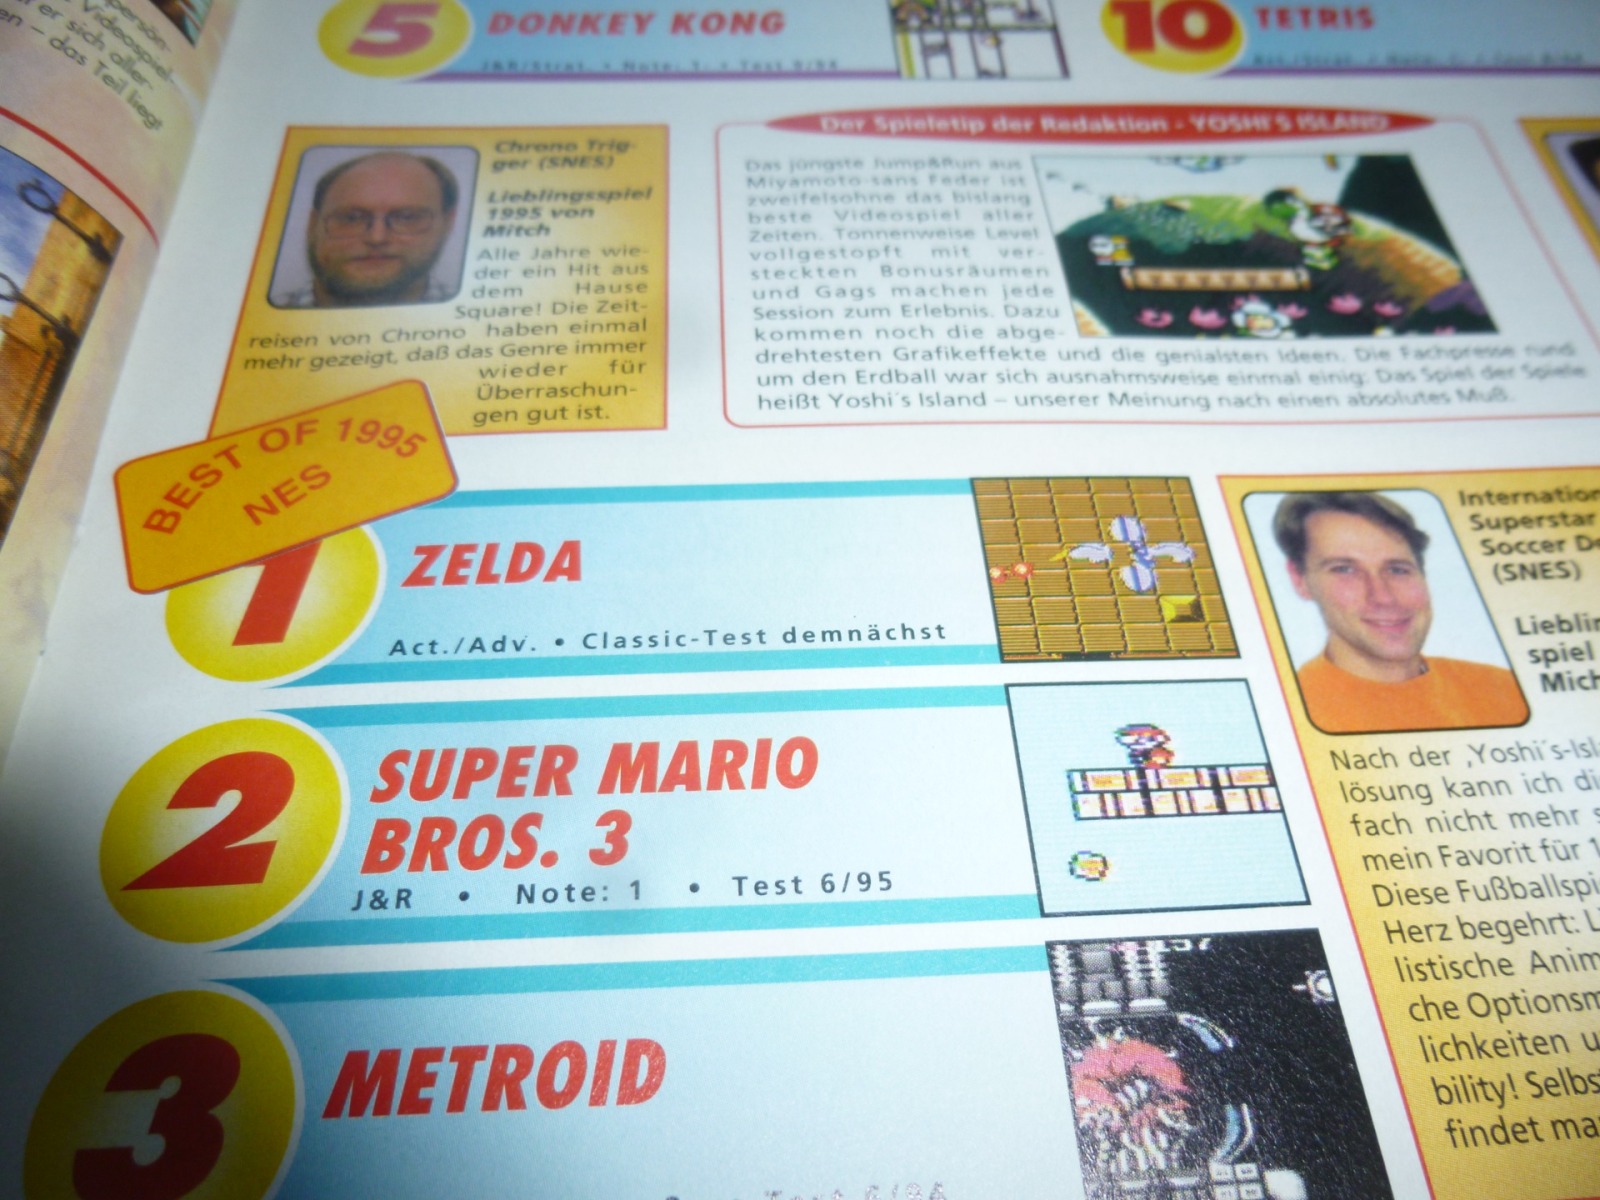 TOTAL Das unabhängige Magazin - 100 Nintendo - Ausgabe 2/96 1996 17